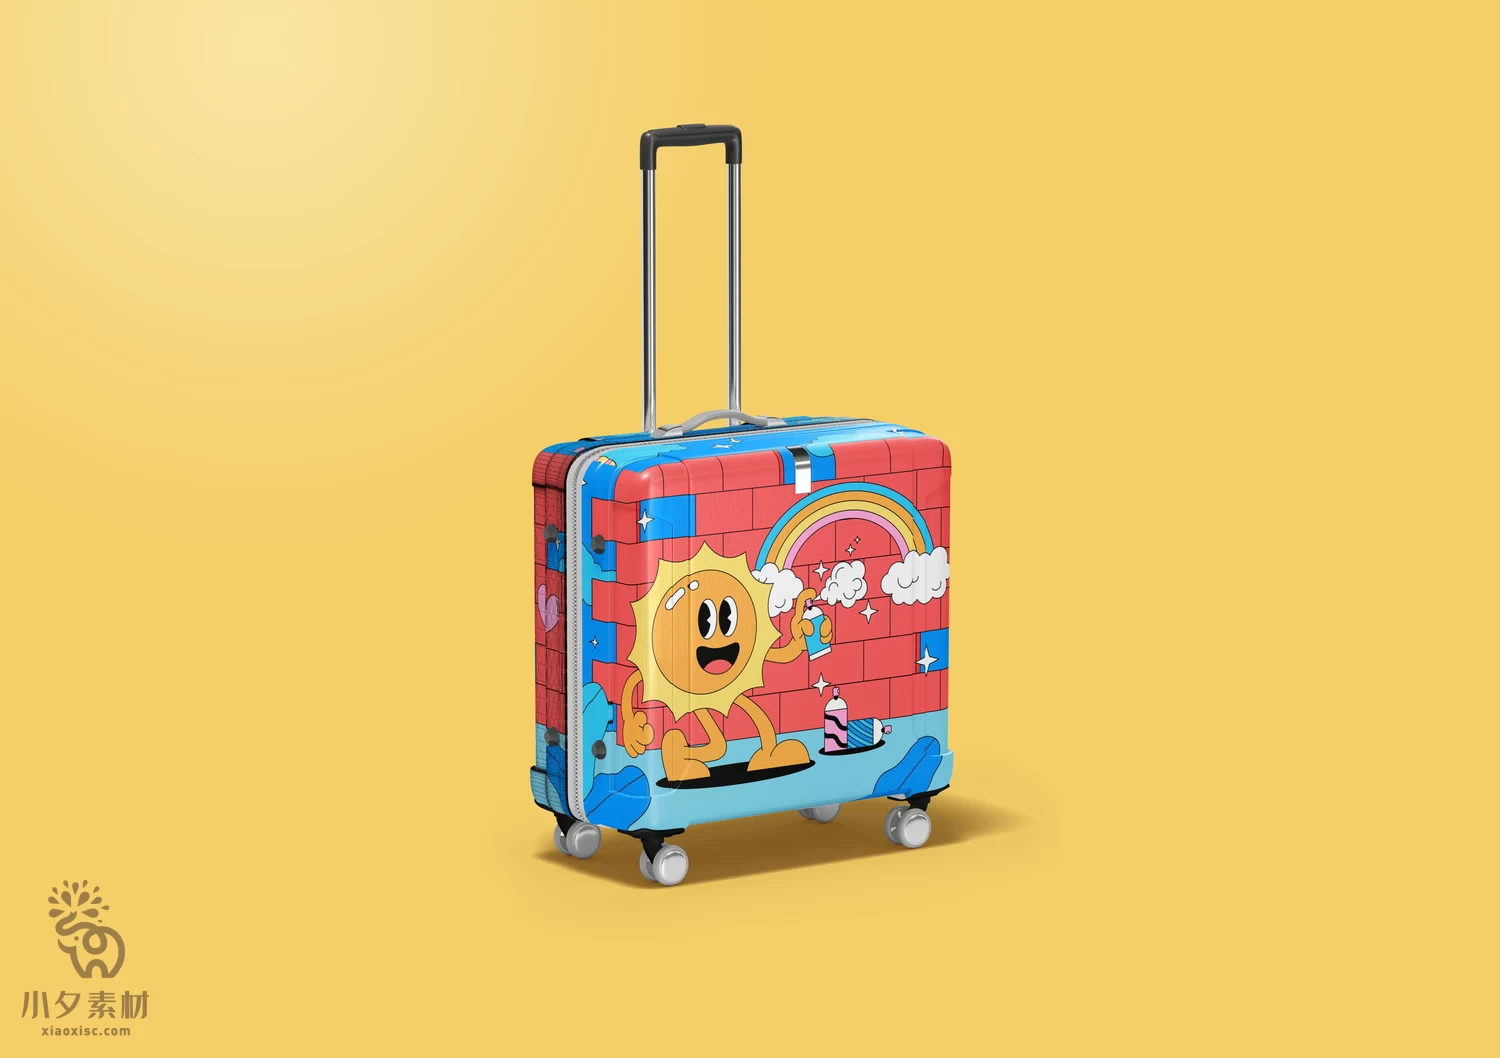 品牌儿童方形行李箱拉杆箱VI智能贴图文创样机模板PSD设计素材【003】